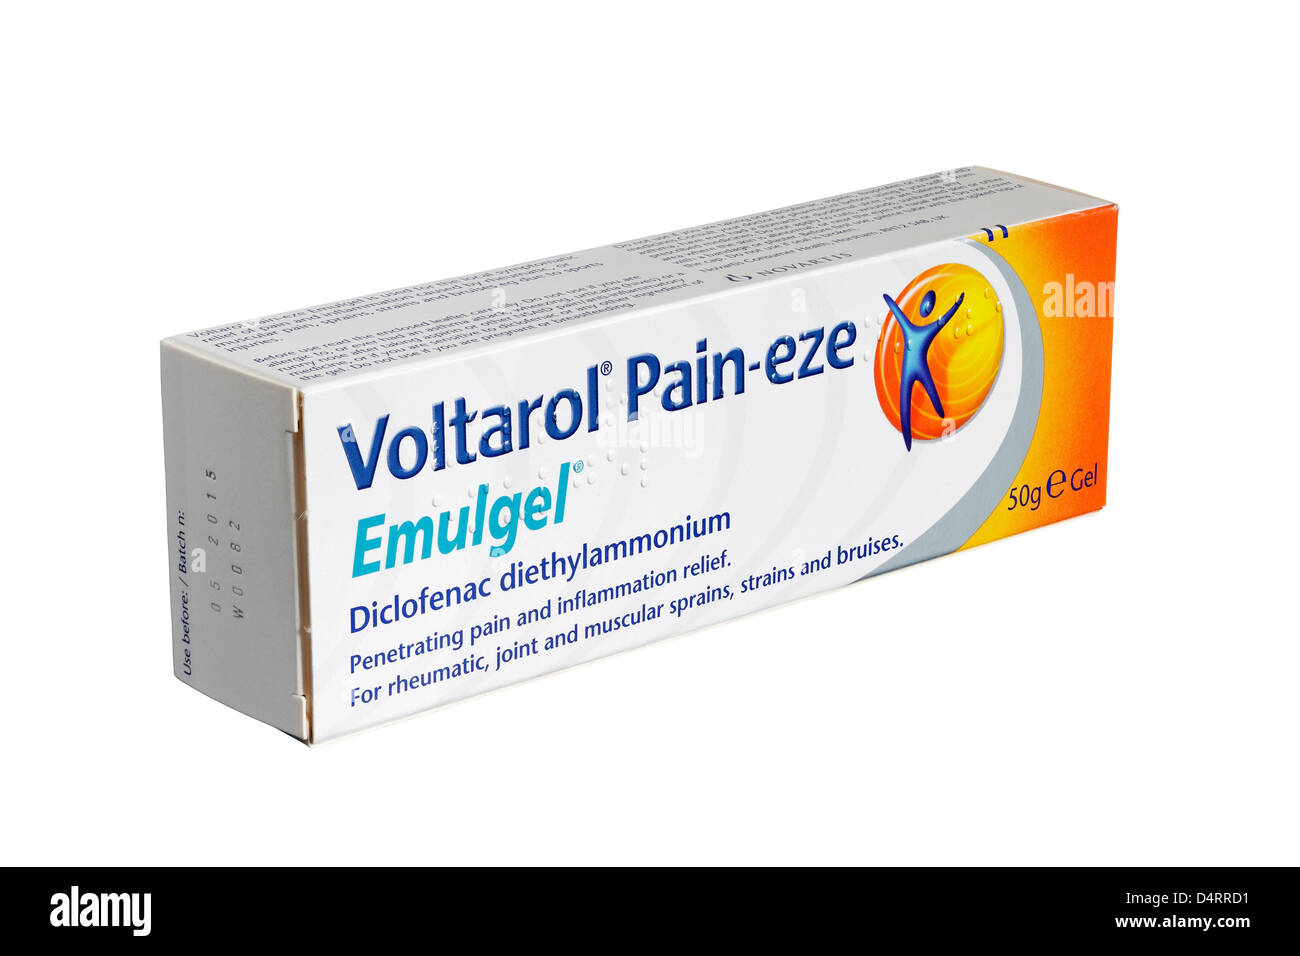 Voltarol dolore-eze Emulgel isolati su sfondo bianco Foto Stock